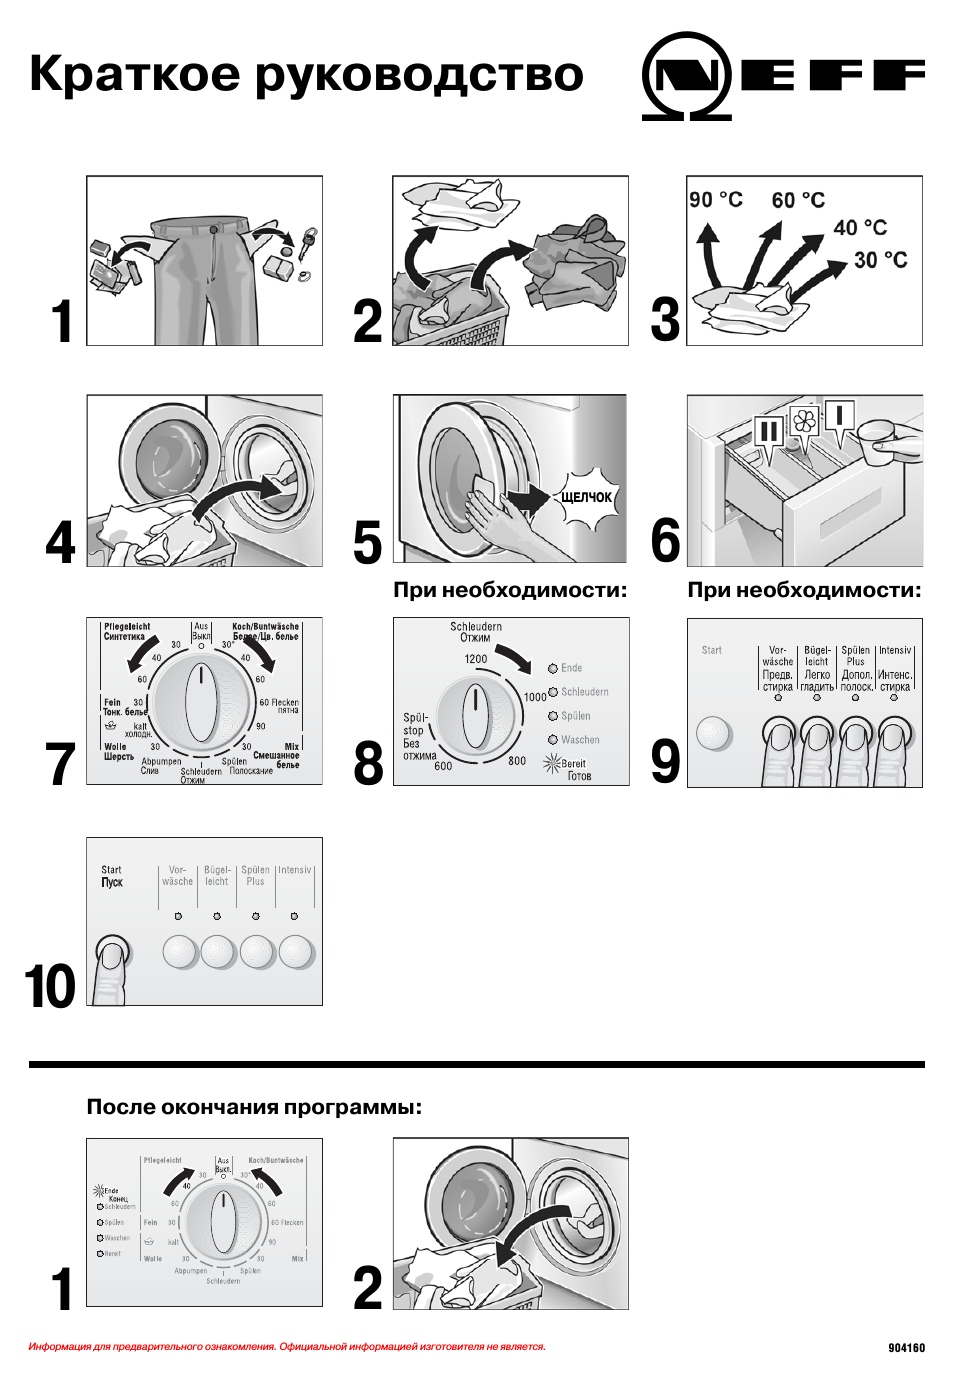 Как пользоваться стиральной машиной автомат?